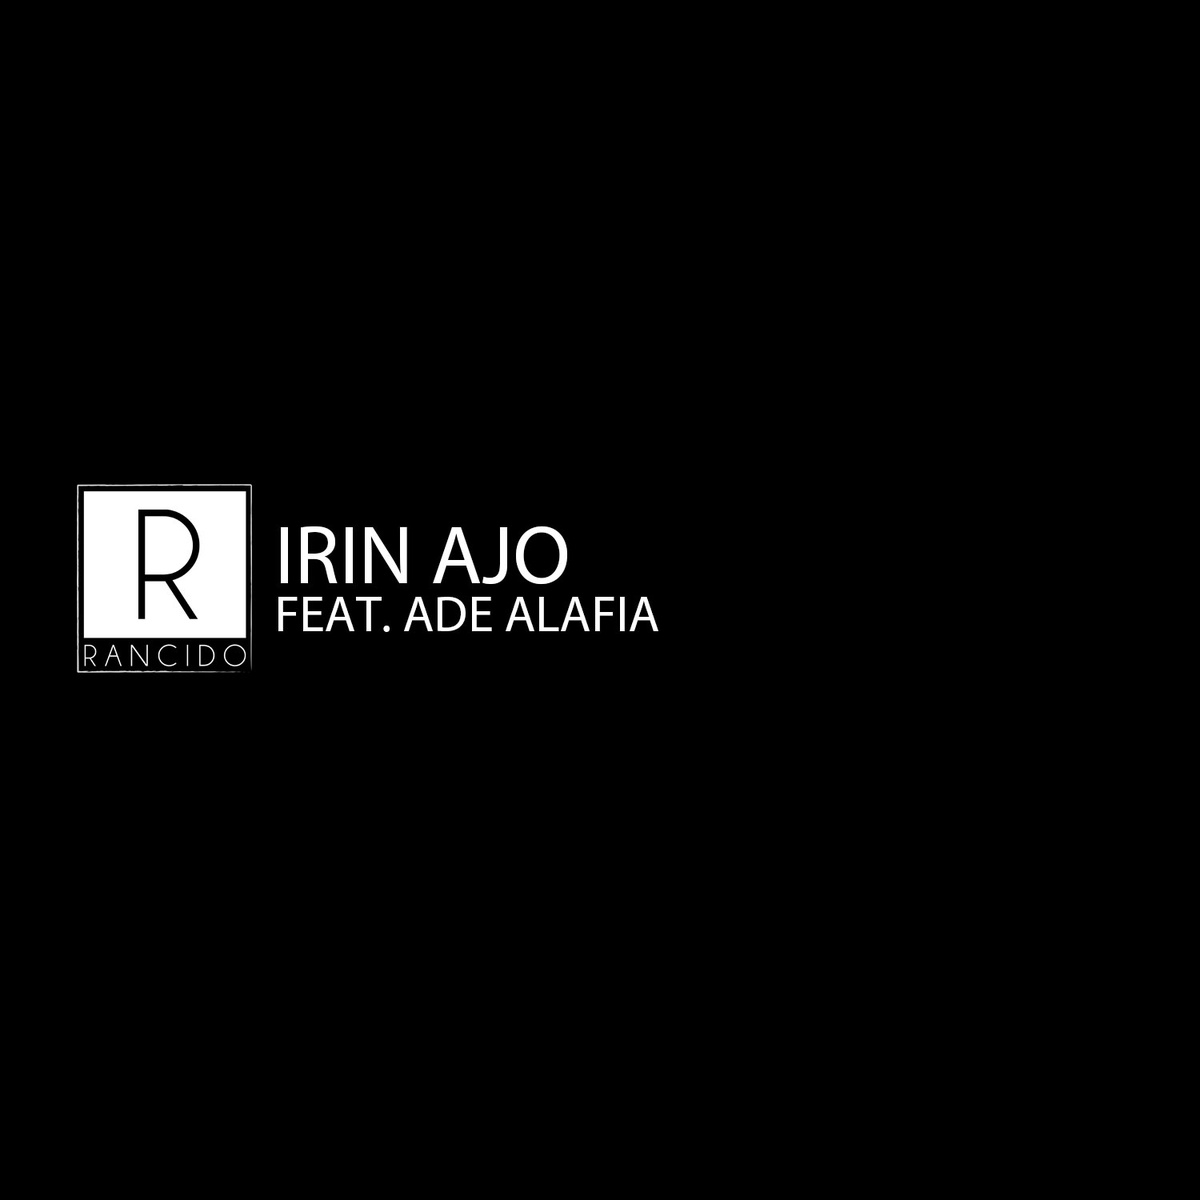 Rancido feat. Ade Alafia - Irin Ajo